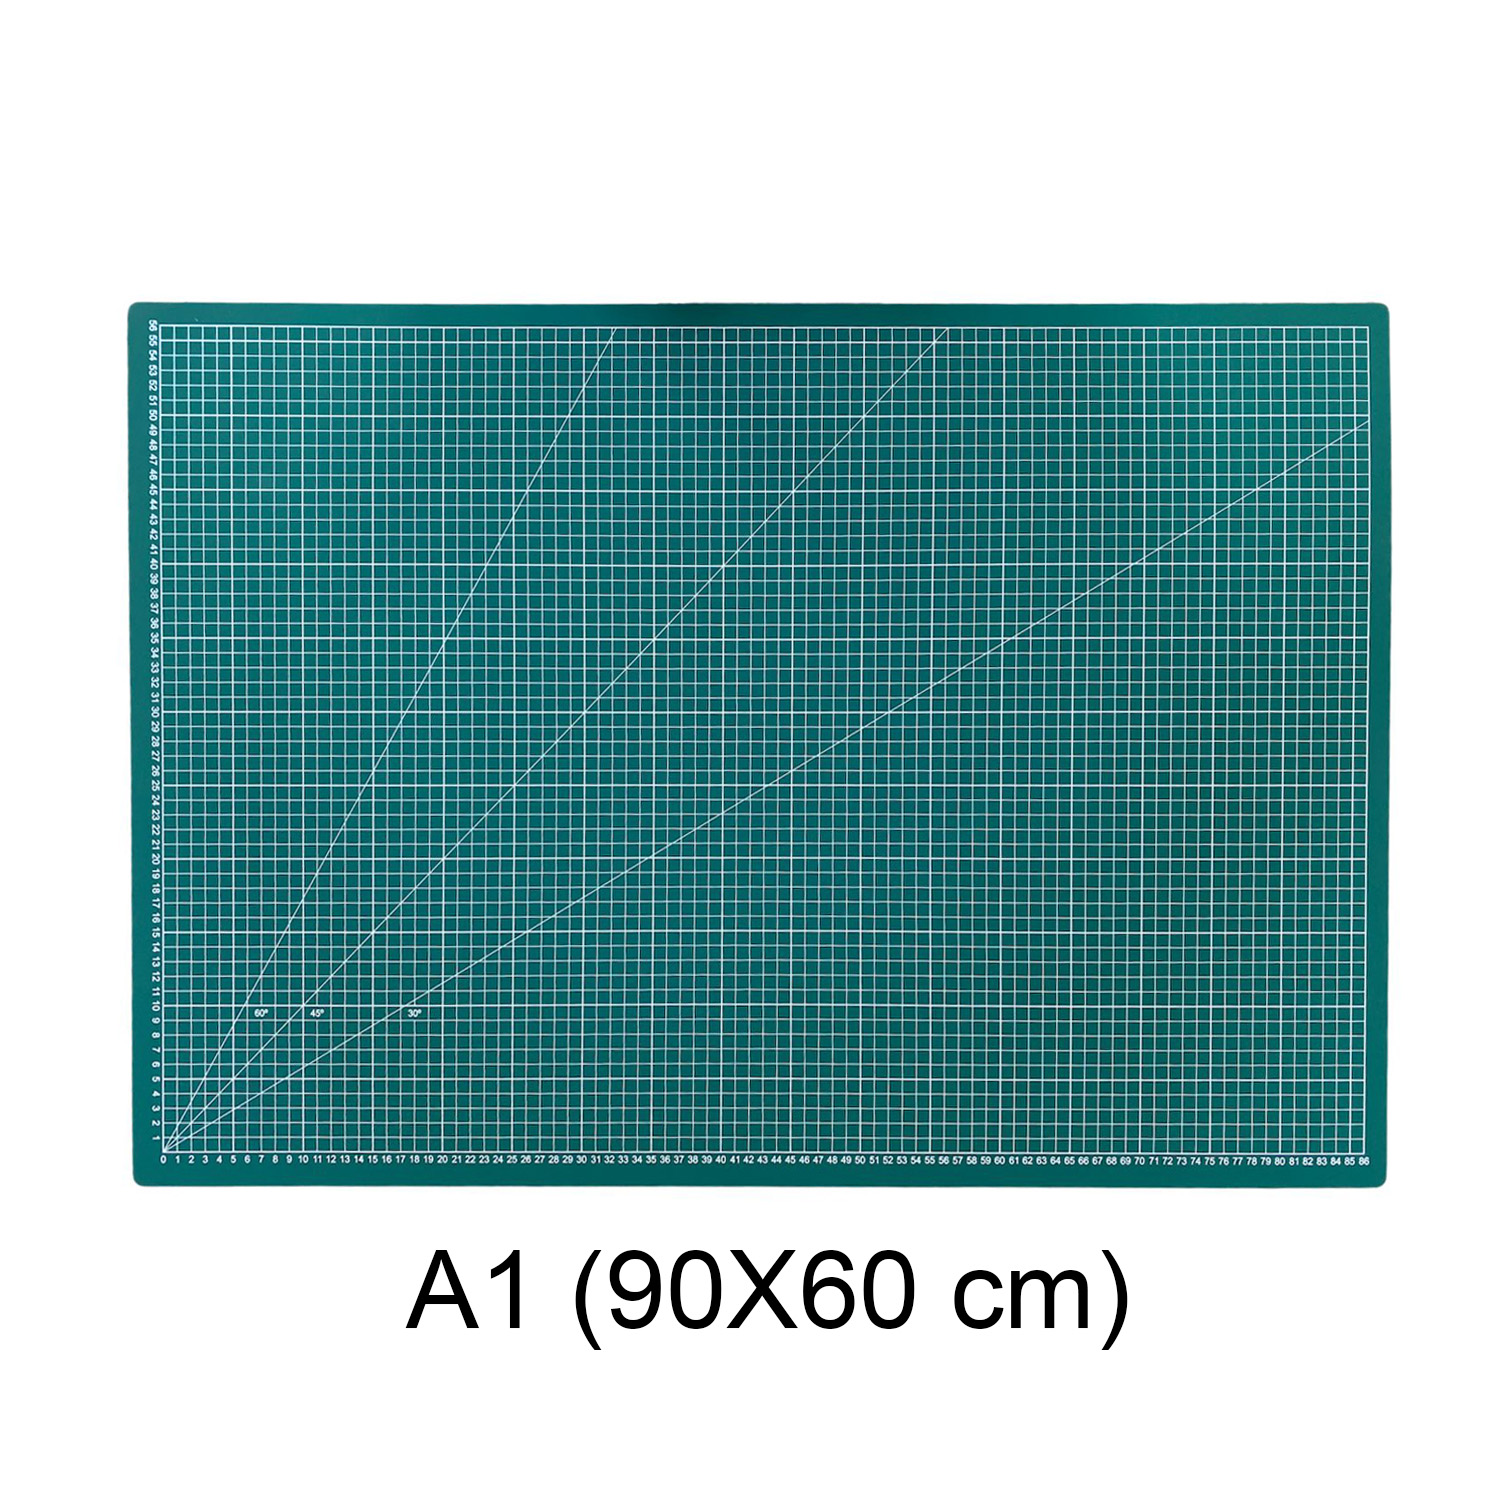 Base de Corte 90X60cm (A1) Cuadriculada y con Ángulos